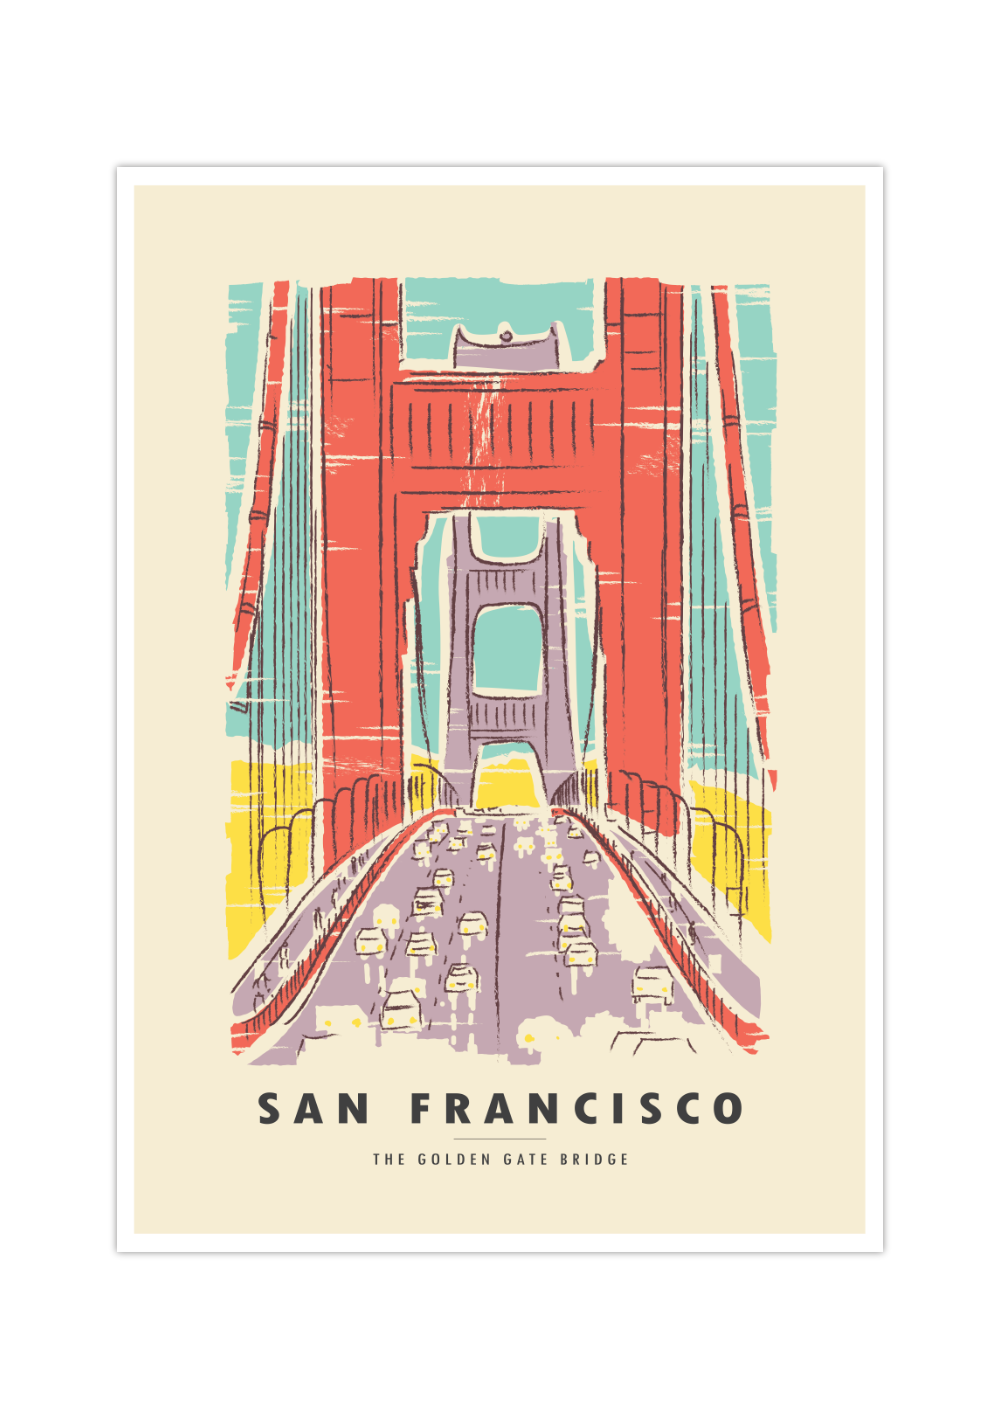 Das Poster zeigt dir eine Zeichnung der Golden Gate Bridge in San Francisco.